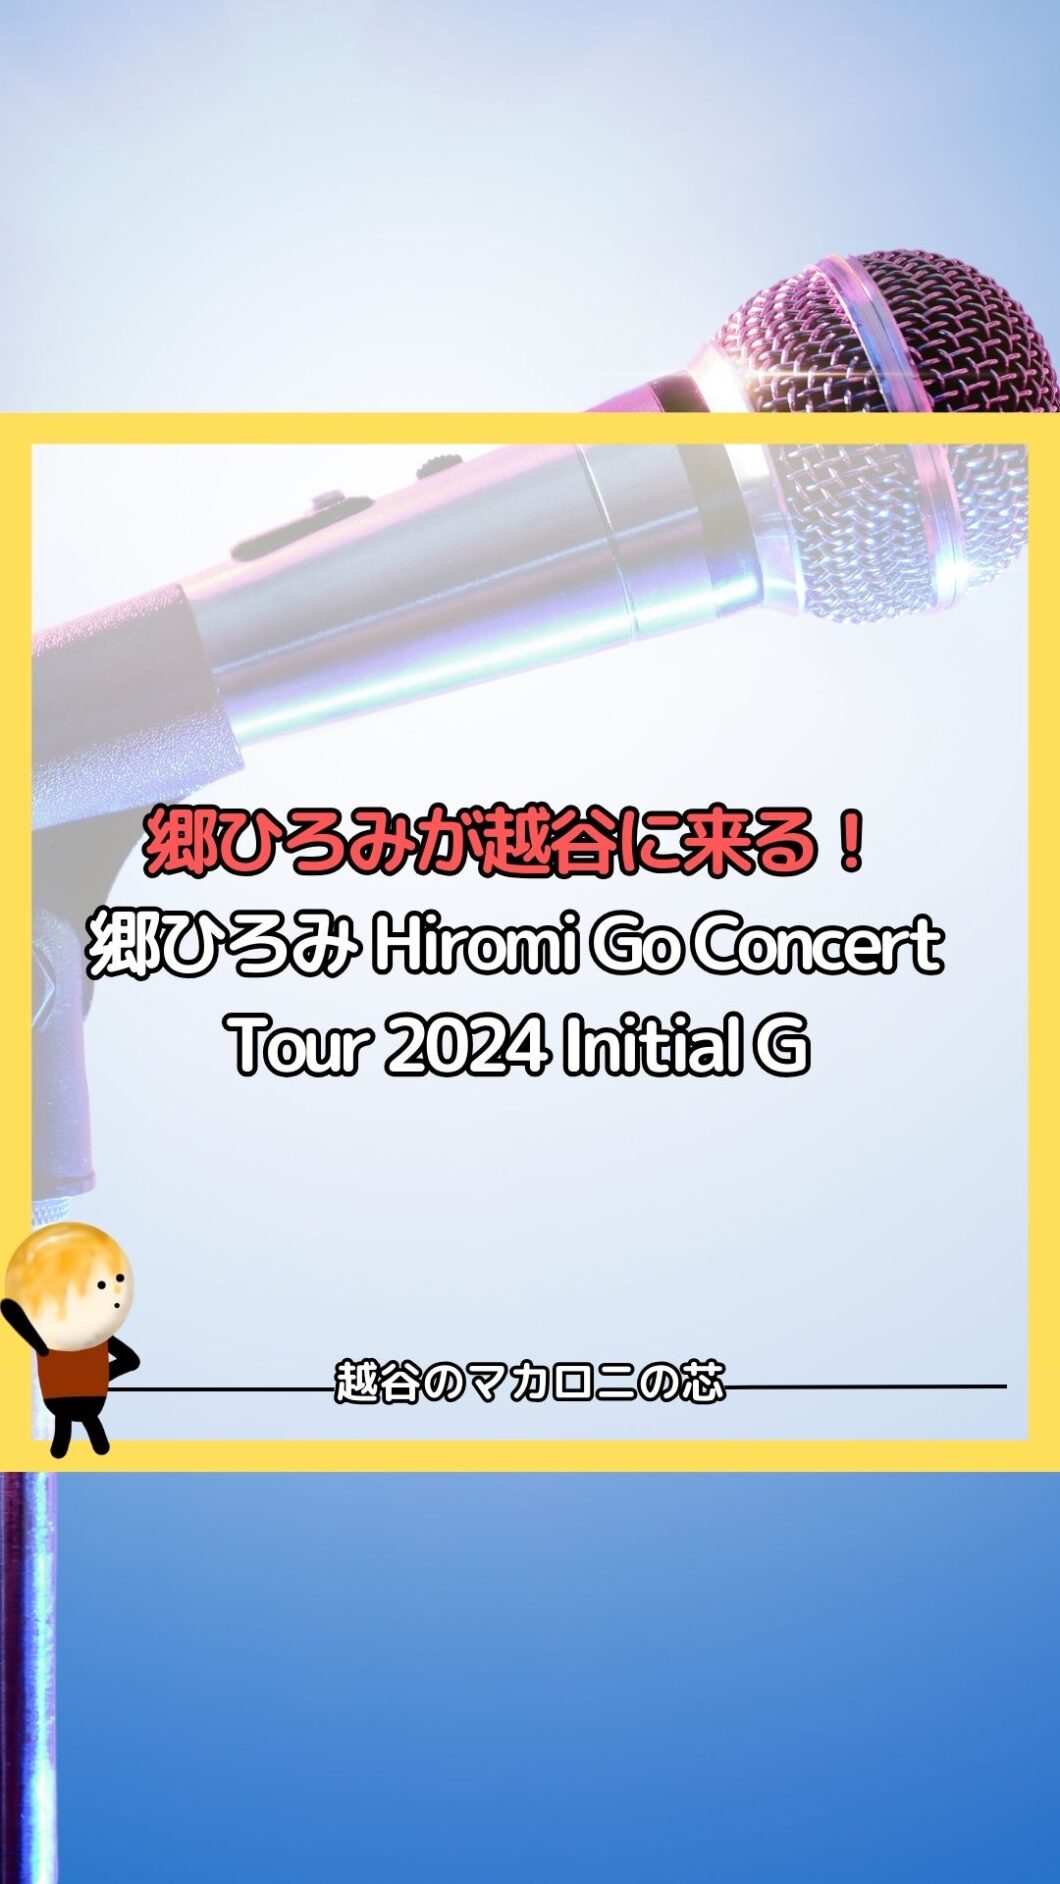 郷ひろみが越谷に来る！郷ひろみ Hiromi Go Concert Tour 2024 Initial G